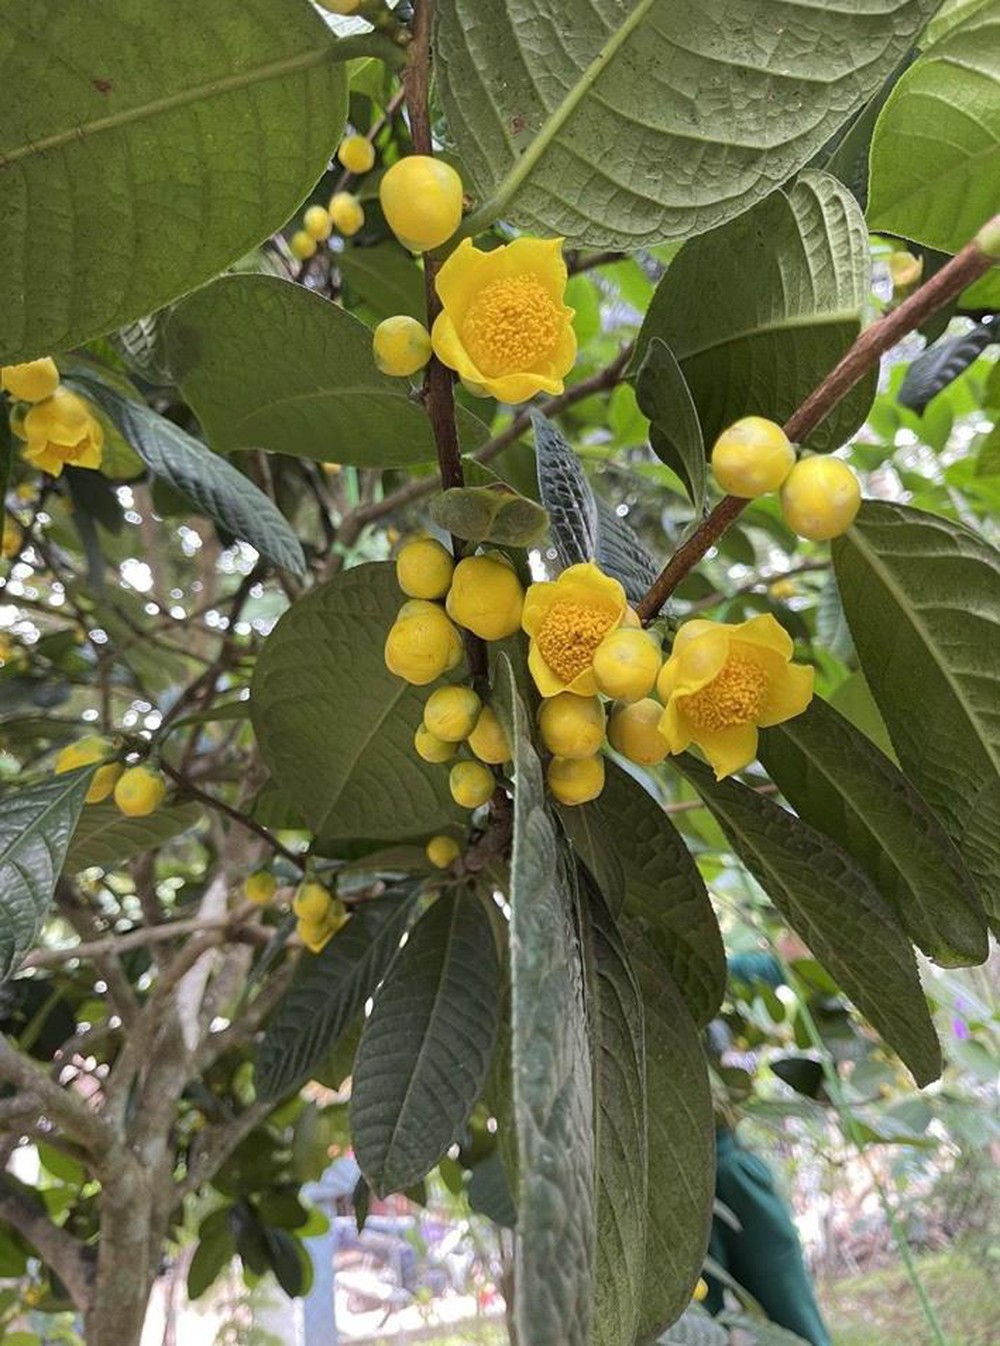 Hakoda Ninh Việt Nam ra mắt Nimellia trà hoa vàng sau 30 năm cần mẫn của vị giáo sư - Ảnh 1.